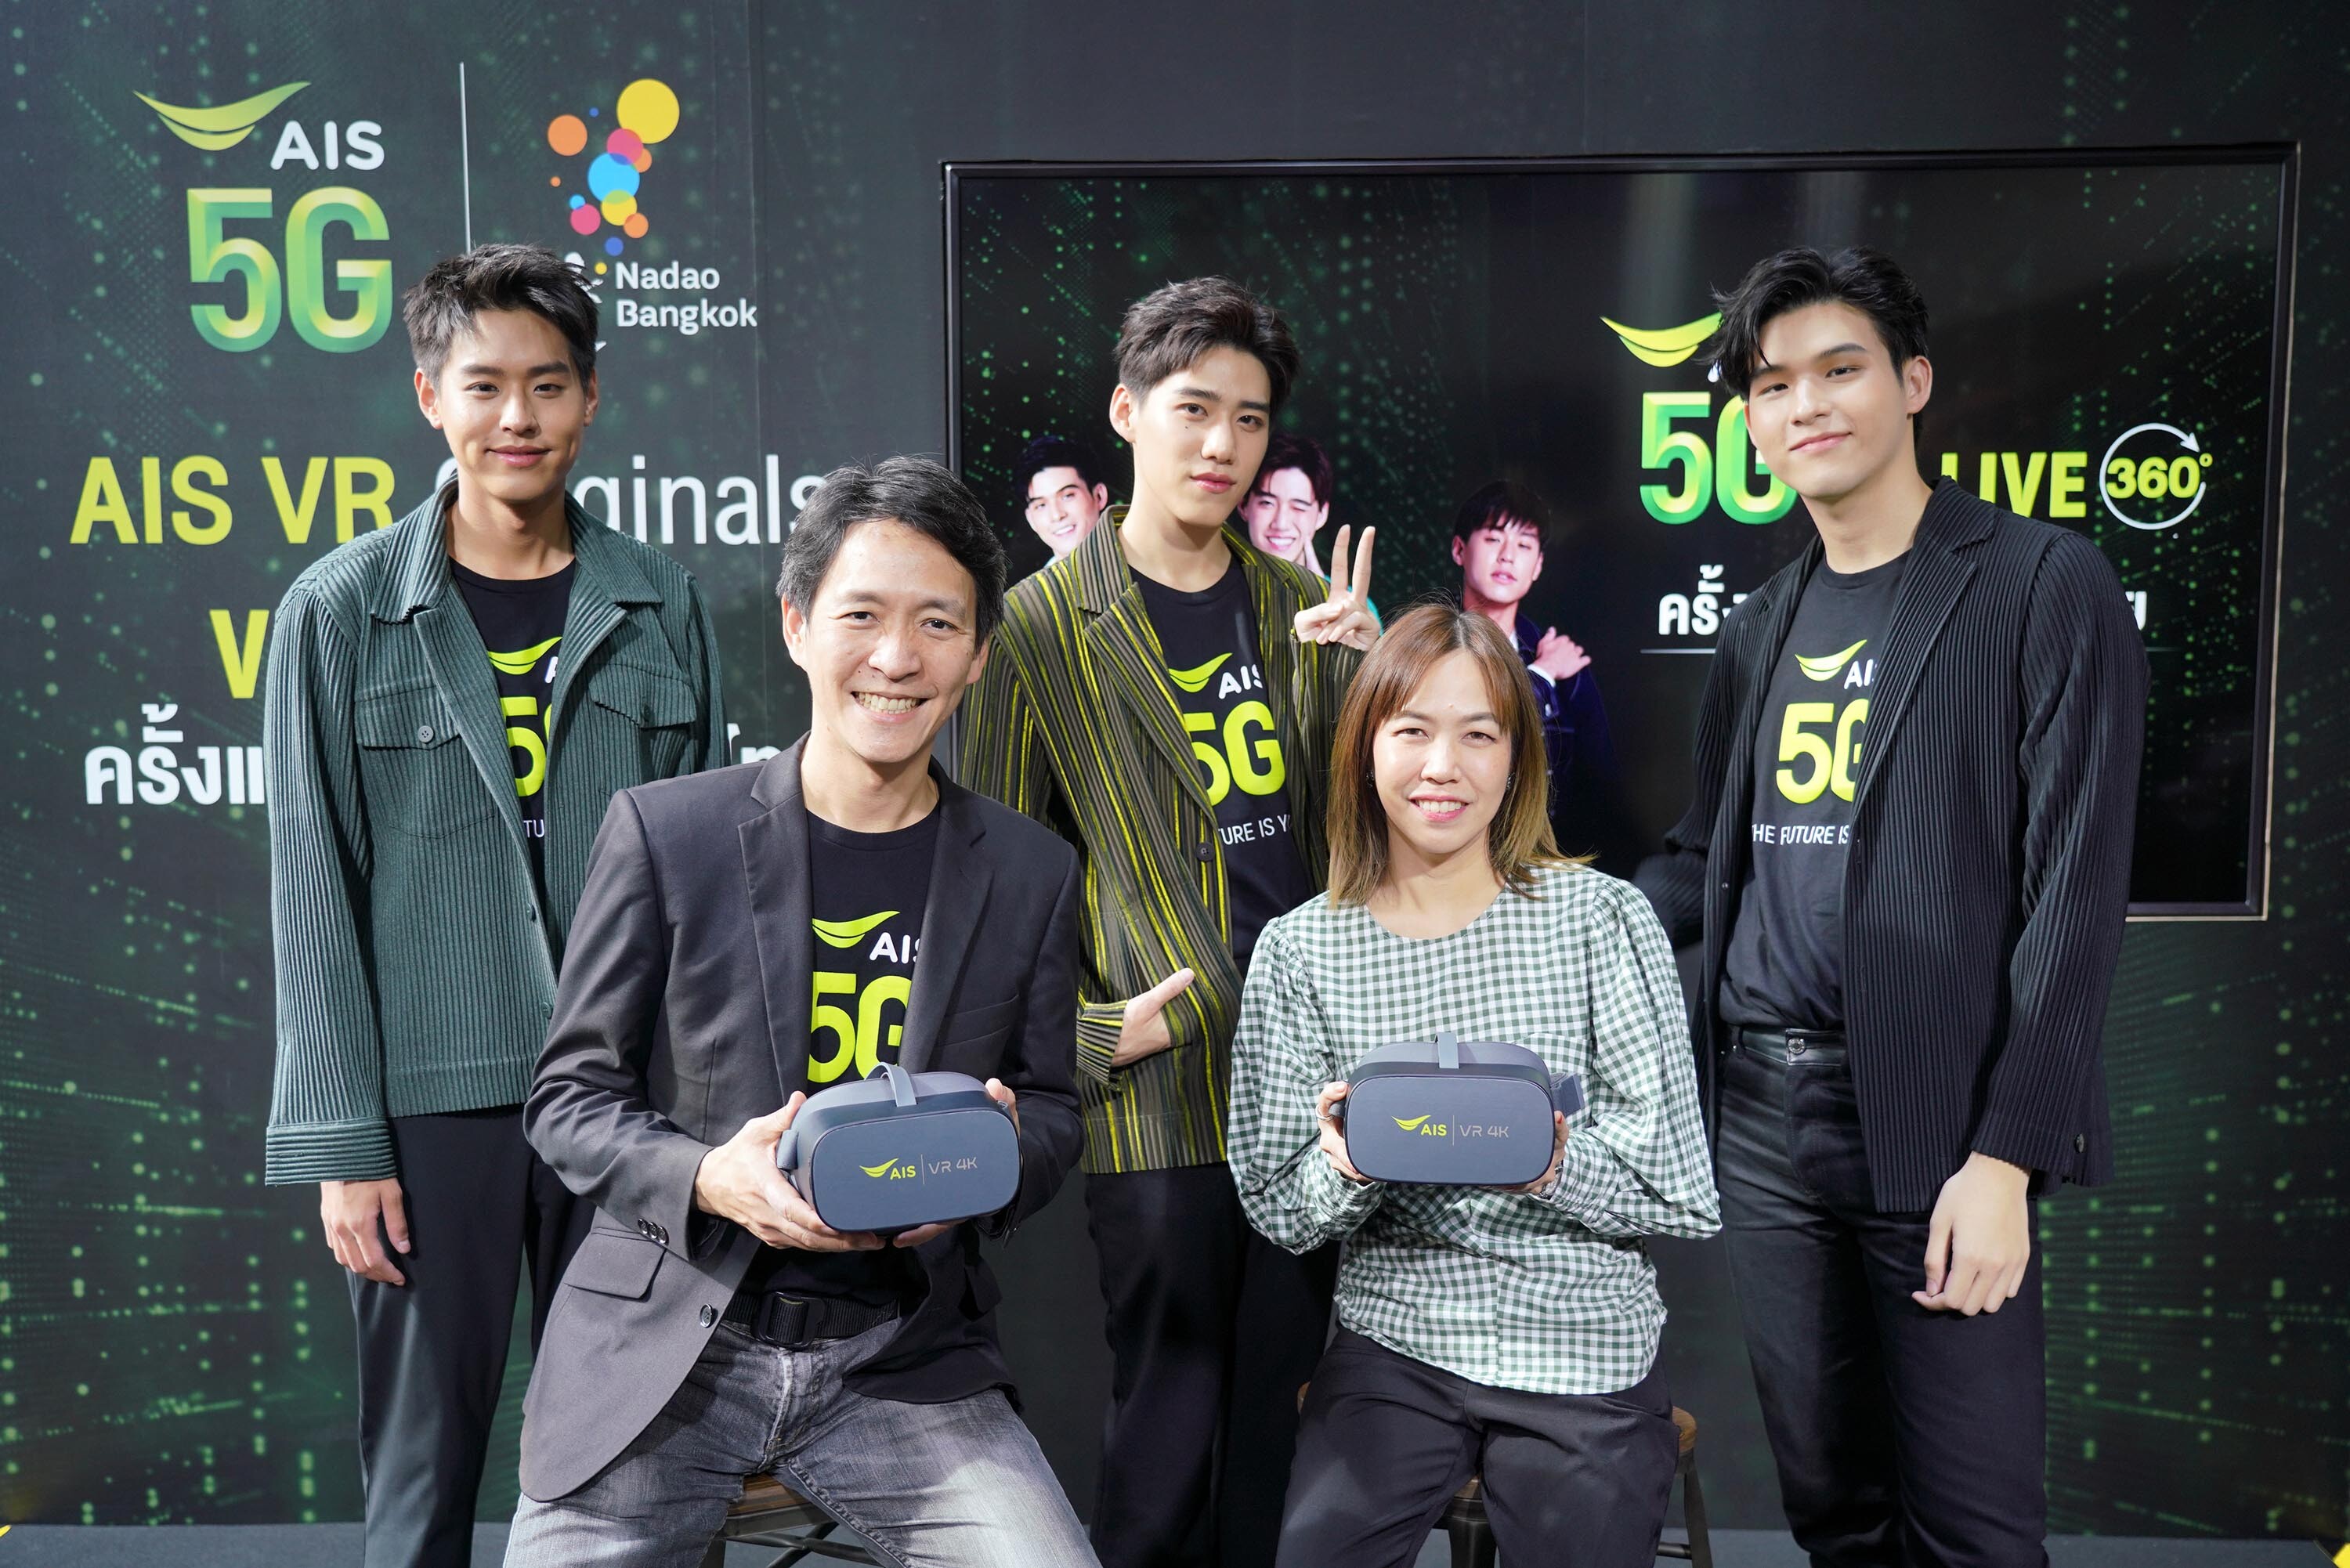 AIS โชว์ล้ำ จัดจริง “The First 5G VR live streaming” รายแรกในไทย ผนึก นาดาวฯ ดึงศิลปินเรียกเสียงกรี๊ด กระหึ่มแฟนมีท วิถีนิวนอร์มอล